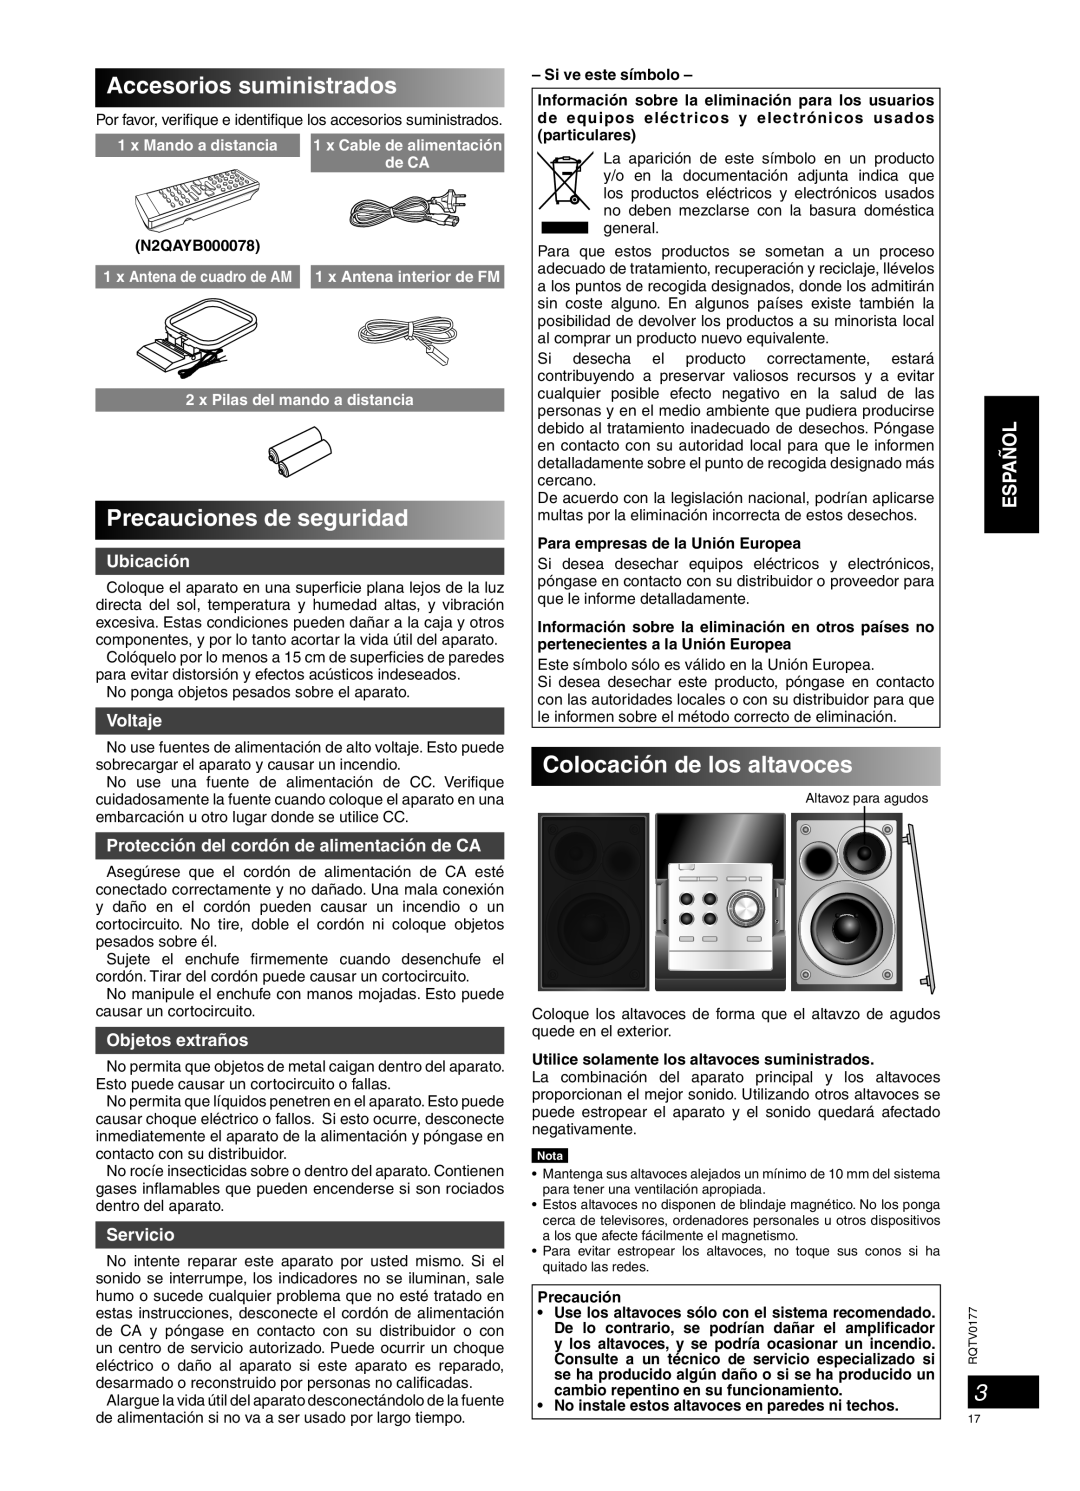 Panasonic SC-PM45 Accesorios suministrados, Precauciones de seguridad, Colocación de los altavoces, Español, Ubicación 